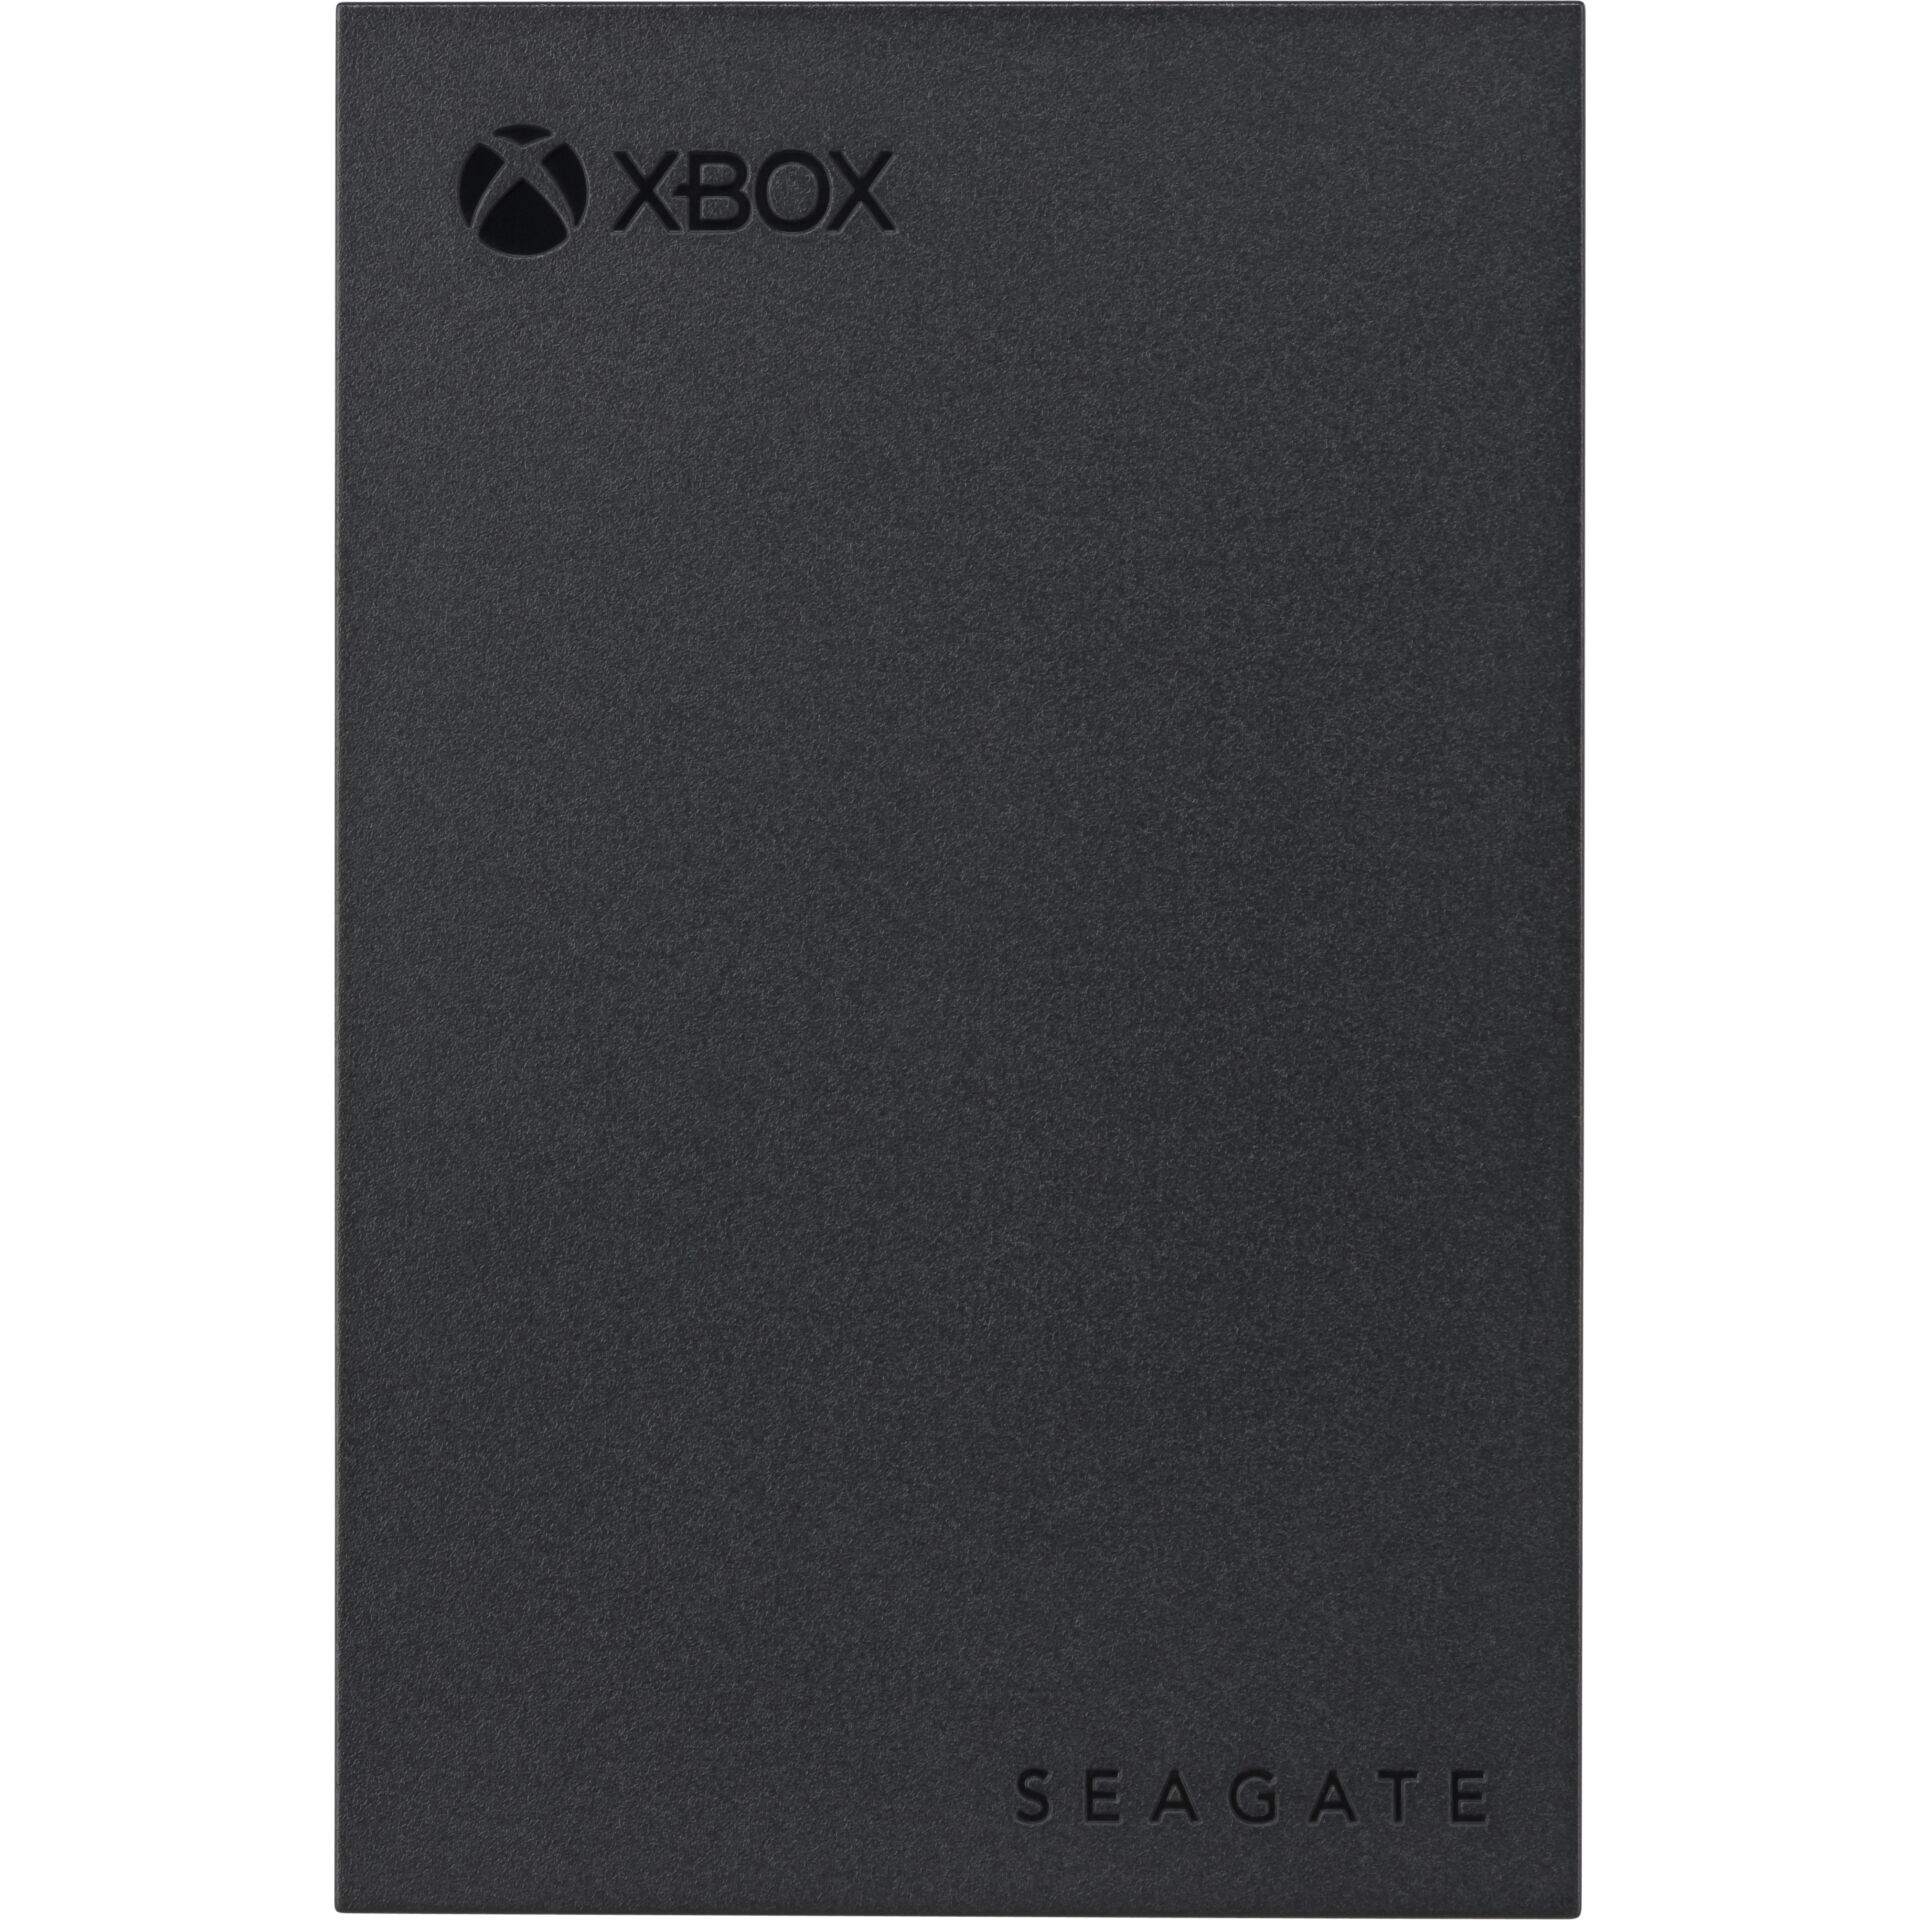 2.0 TB Seagate Game Drive for Xbox +Rescue, USB 3.0 Micro-B 